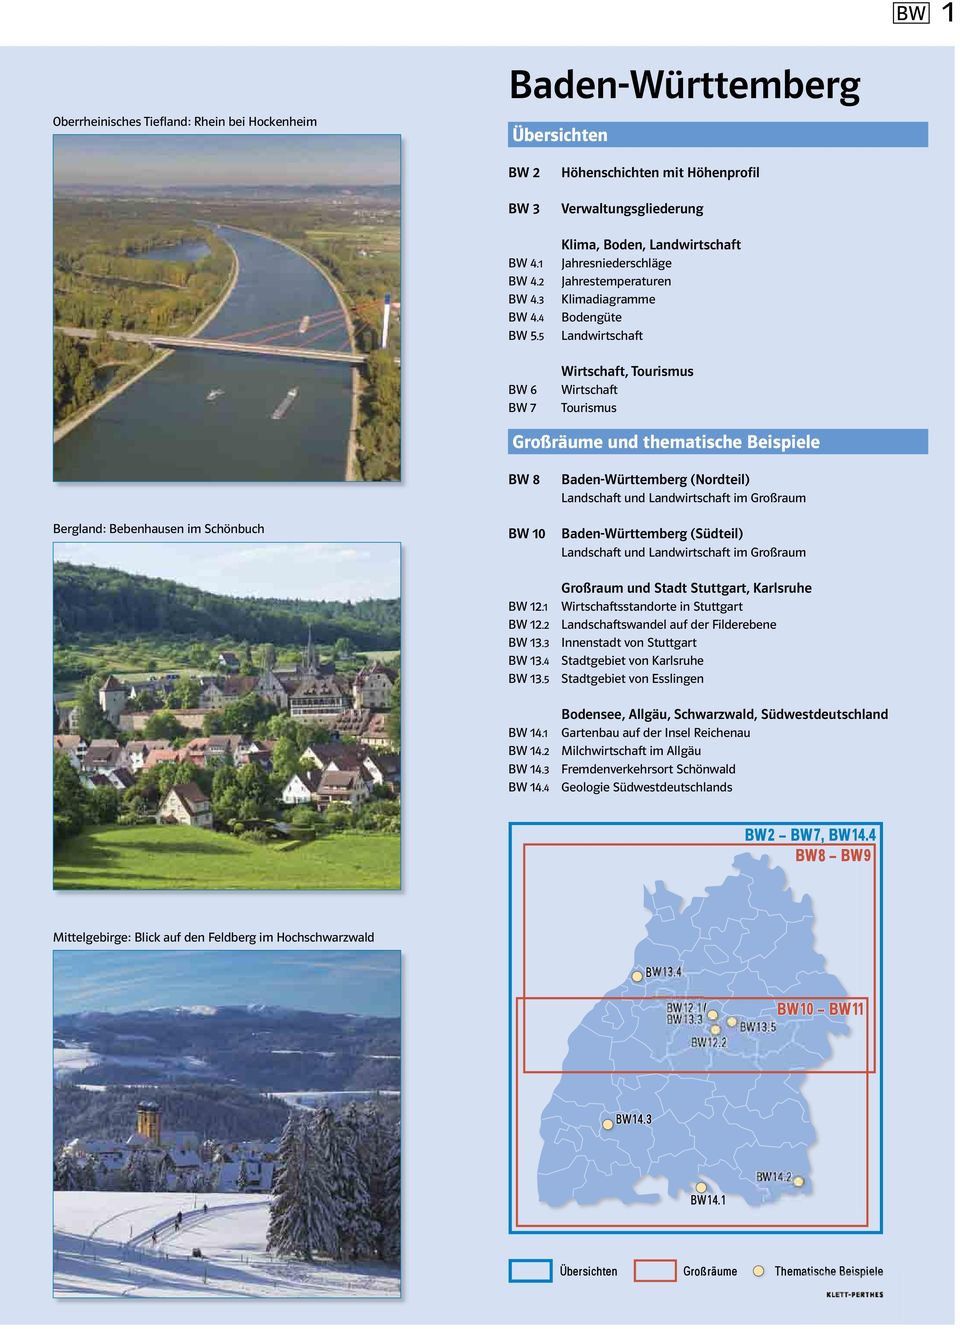 Wirtschaft Tourismus Bergland: Bebenhausen im Schönbuch BW 8 BW 10 Baden-Württemberg (Nordteil) Baden-Württemberg (Südteil) Großraum und Stadt Stuttgart, Karlsruhe BW 12.